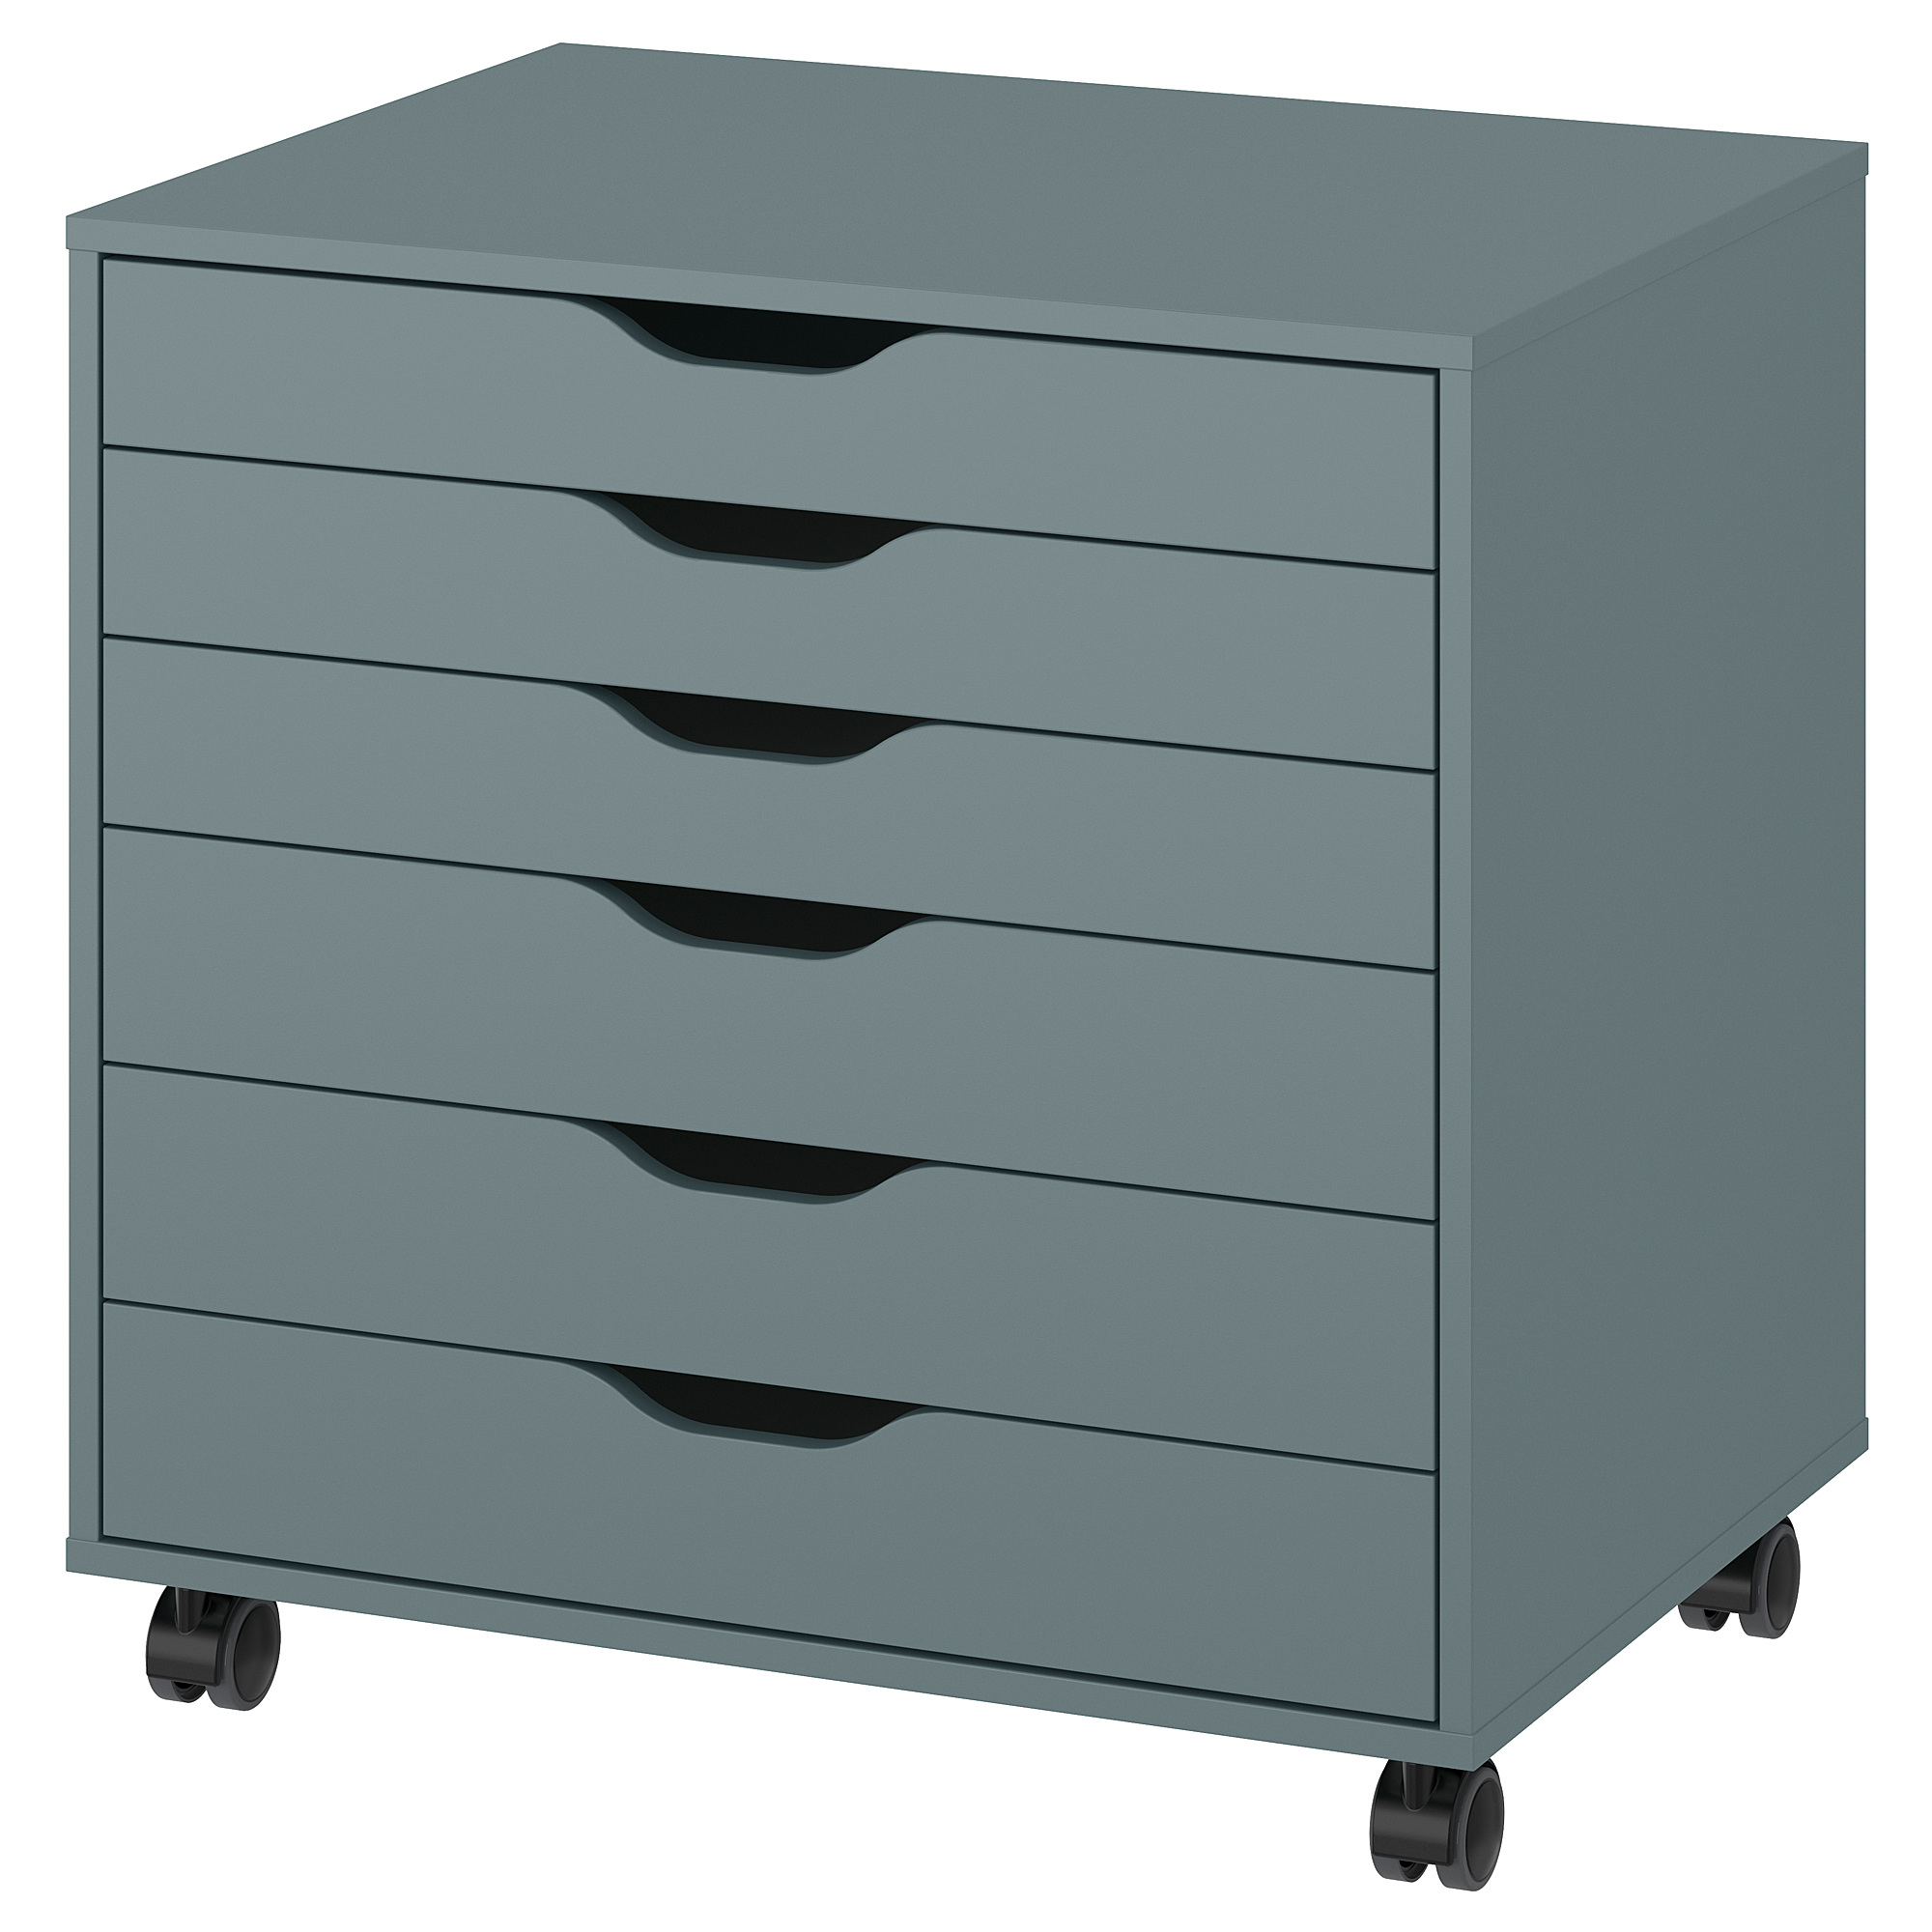 ALEX drawer unit on castors